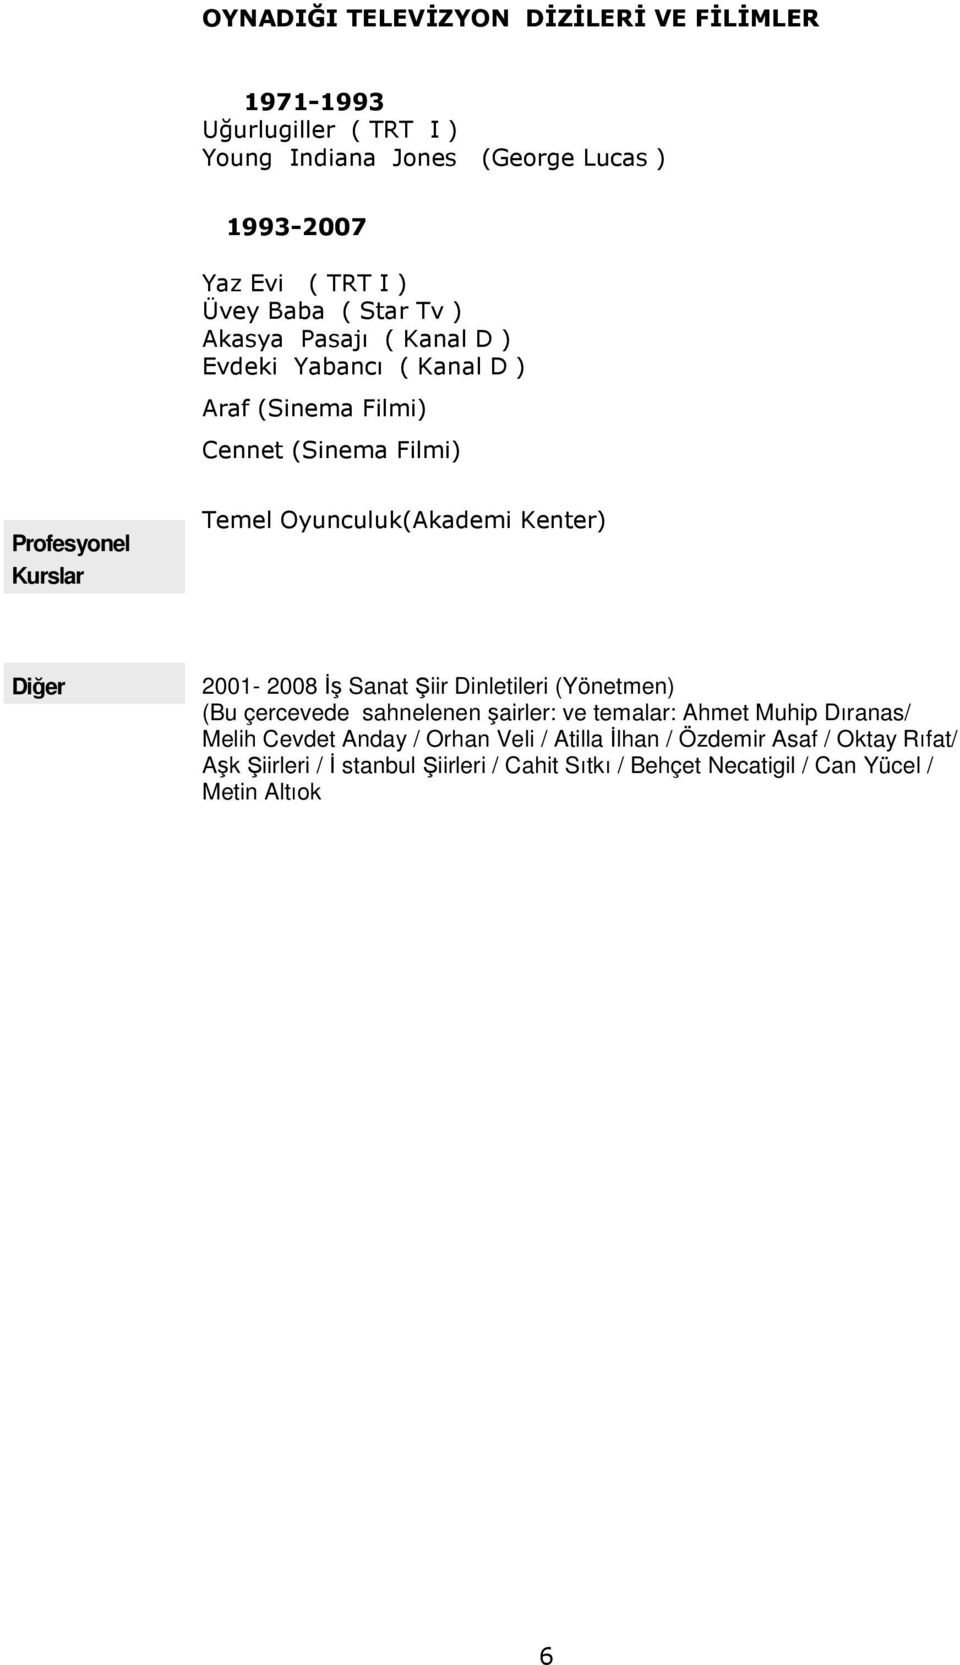 Kenter) Diğer 200-2008 Đş Sanat Şiir Dinletileri (Yönetmen) (Bu çercevede sahnelenen şairler: ve temalar: Ahmet Muhip Dıranas/ Melih Cevdet Anday /